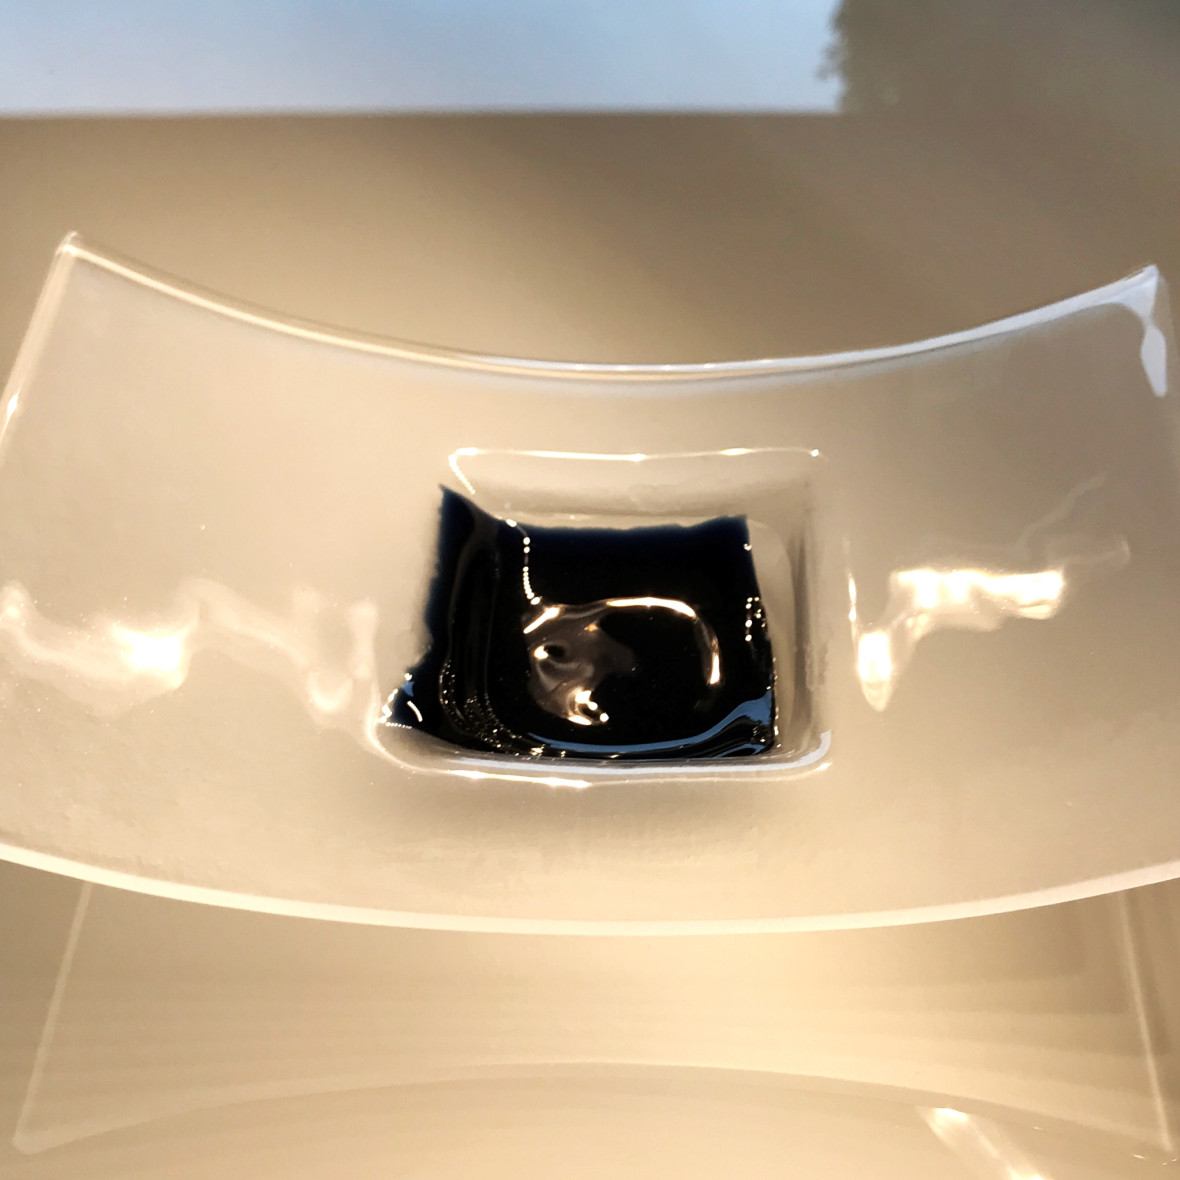 Tischkultur: Schale aus Glas, gewölbt mit Farbakzent